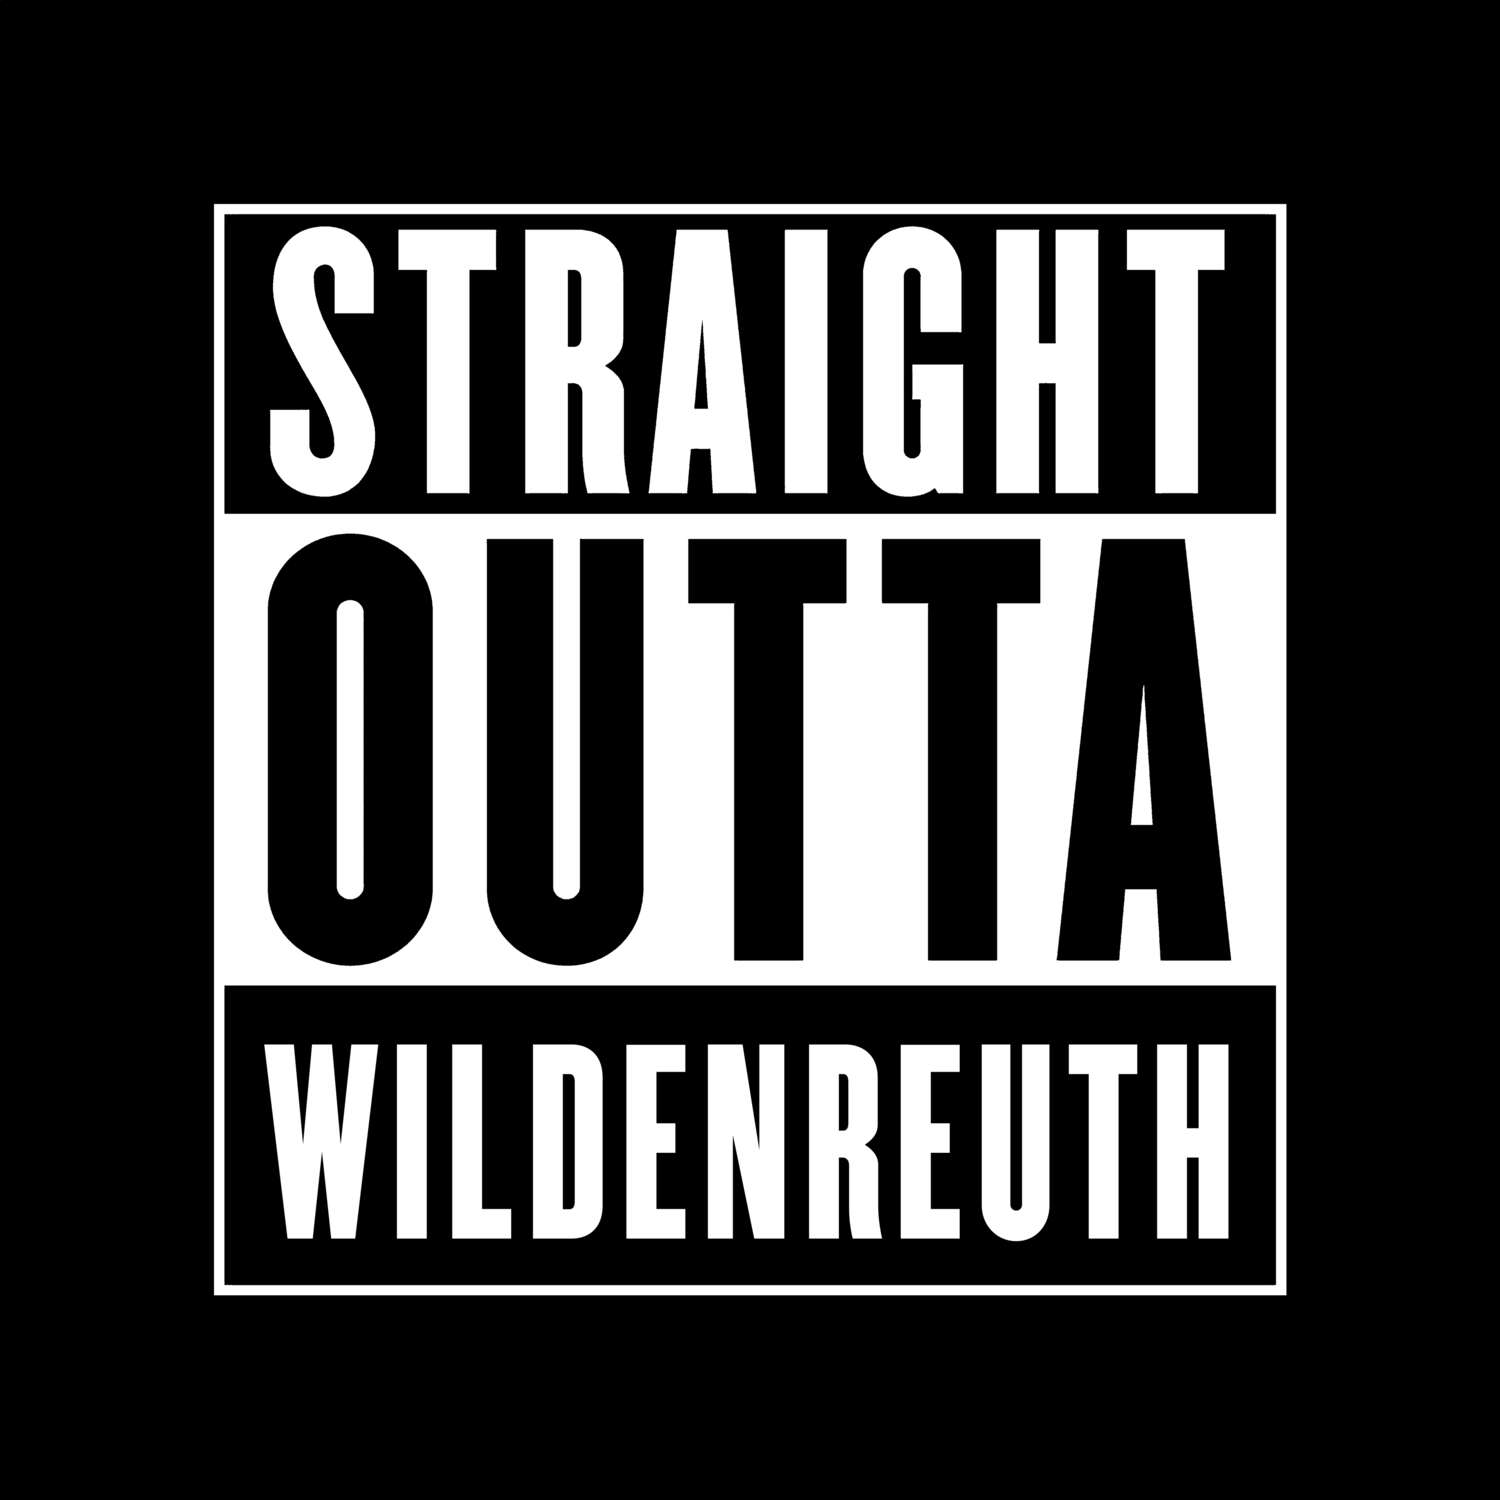 Wildenreuth T-Shirt »Straight Outta«